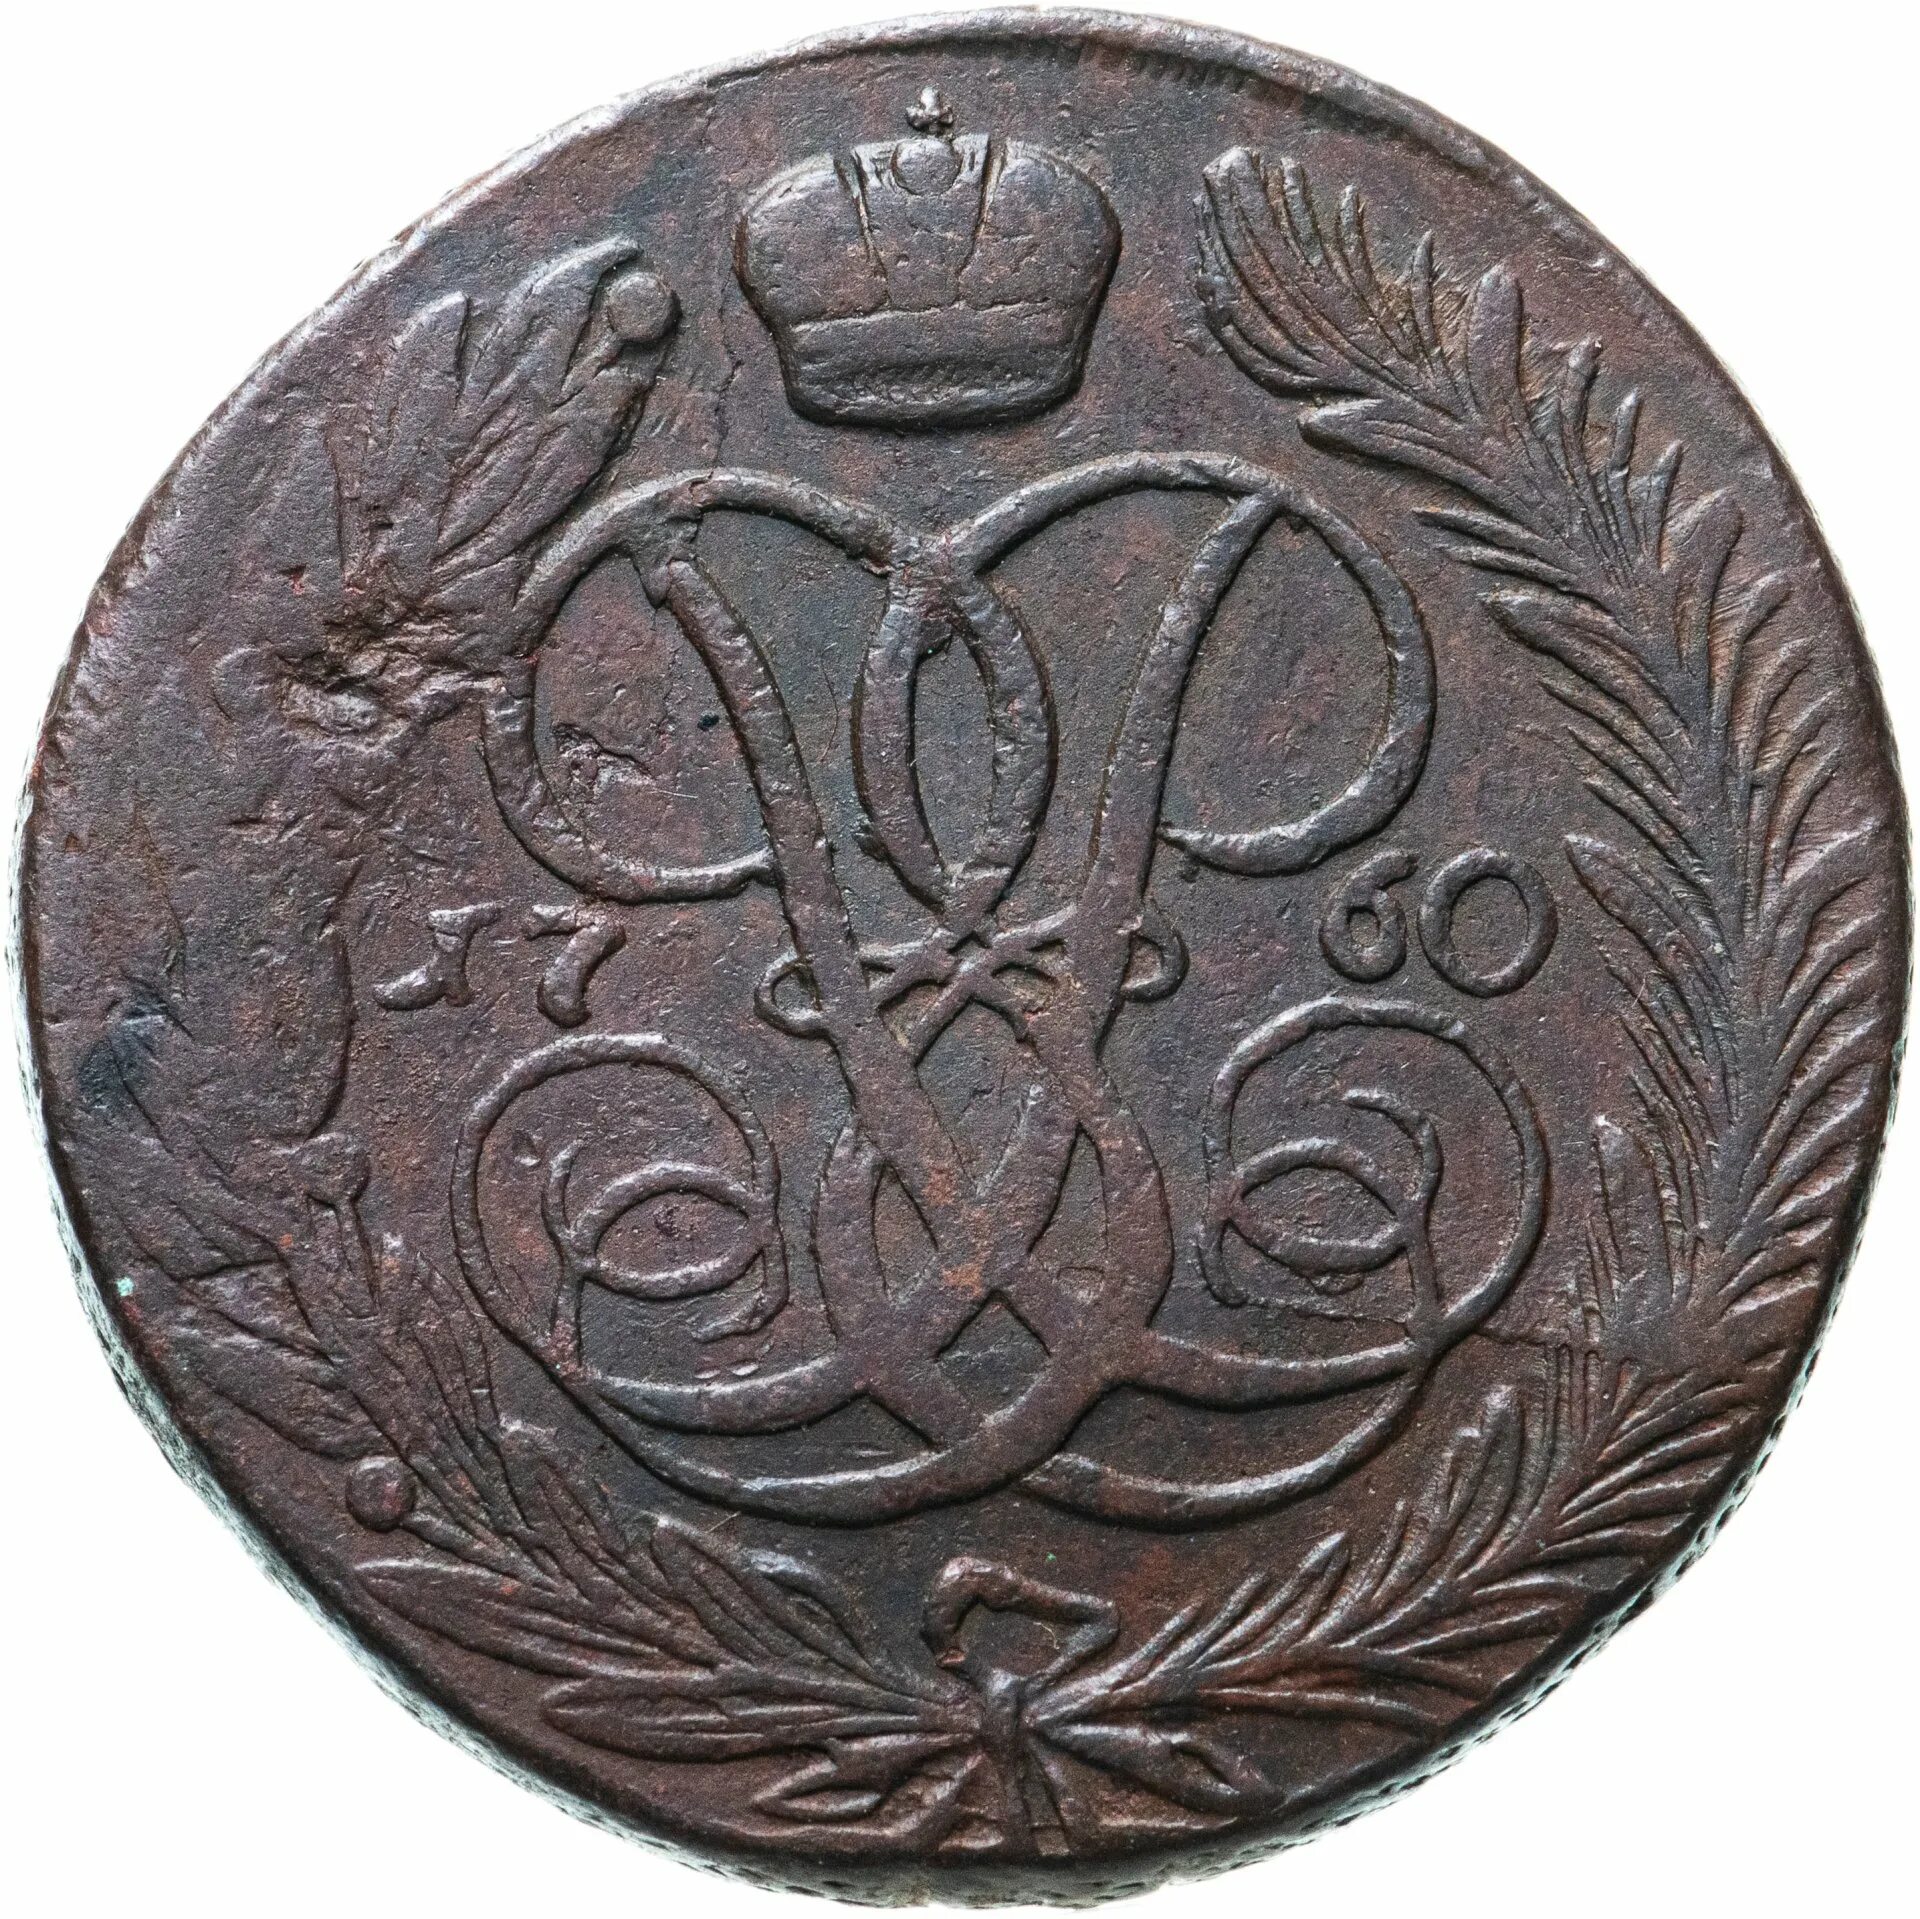 5 Копеек 1759 мм. 5 Копеек 1753. Медные монеты 1700-1800 года. 20 Копеек 1753.